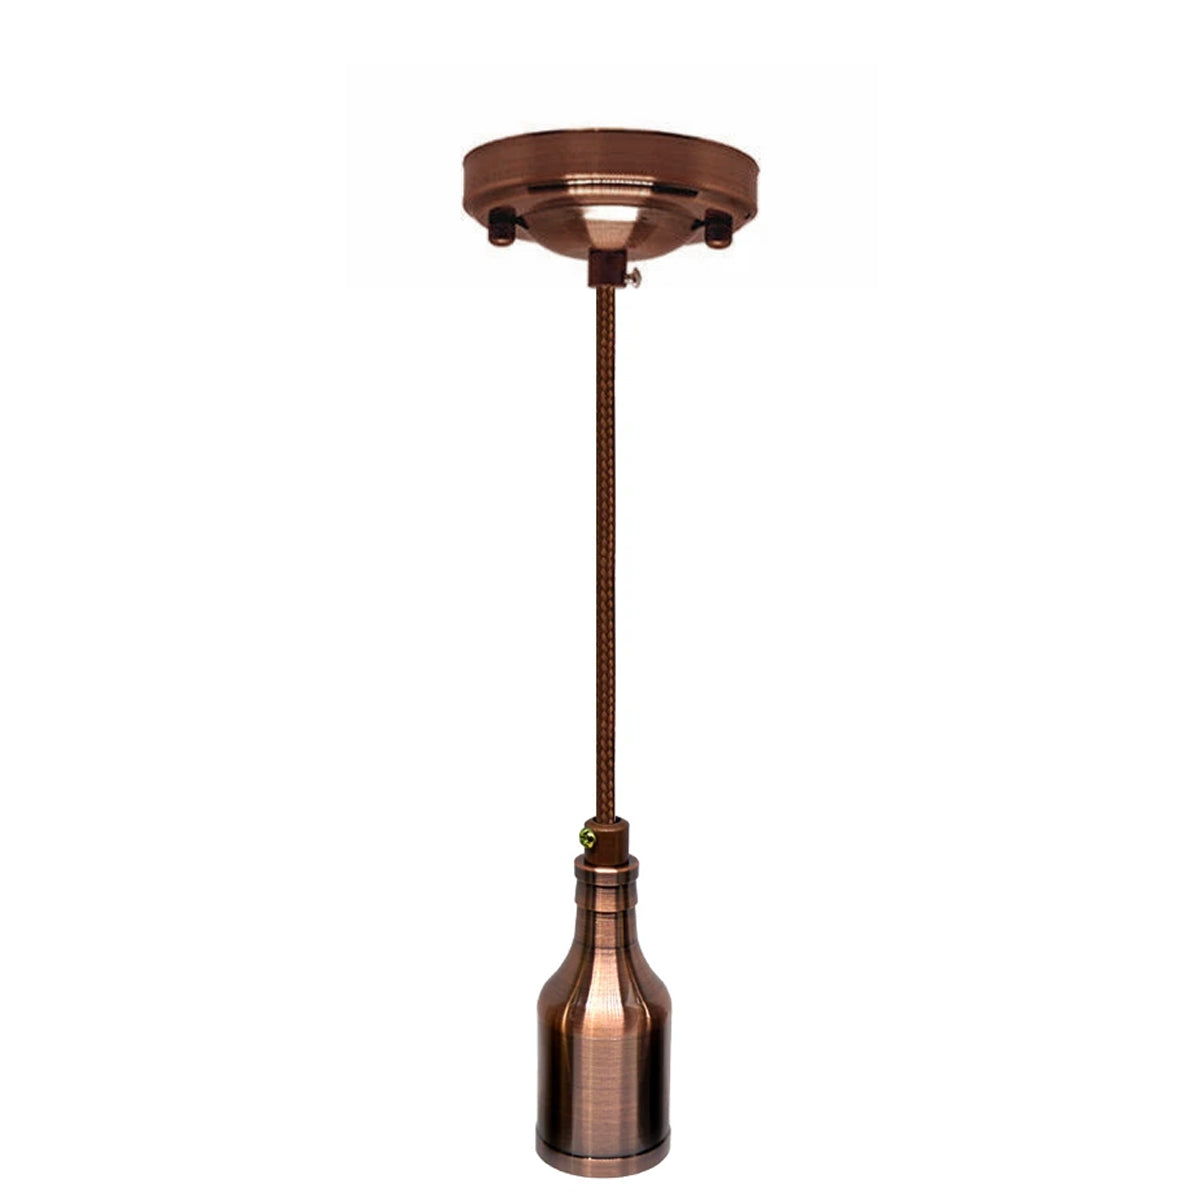 LEDSone Industrial Vintage Ration Threaded Lamp Bulb E27 Holder Vintage~3141